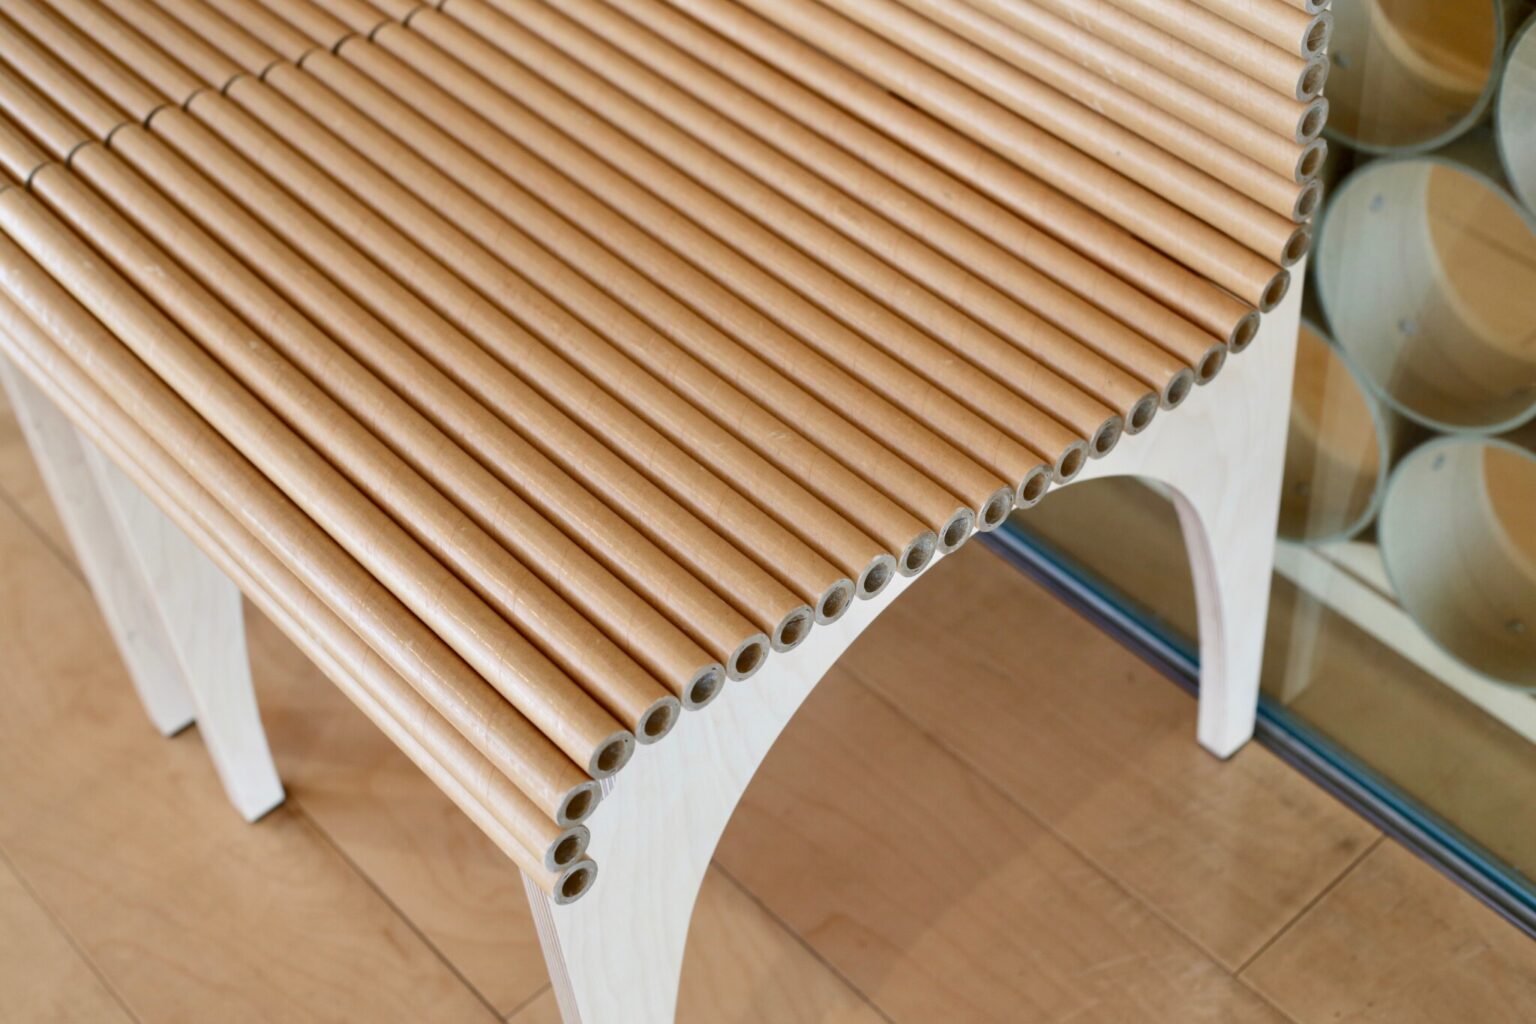 坂氏は紙を使った建築やプロダクトも。曲線が美しい、紙管で作られたベンチや椅子も館内に置かれている。